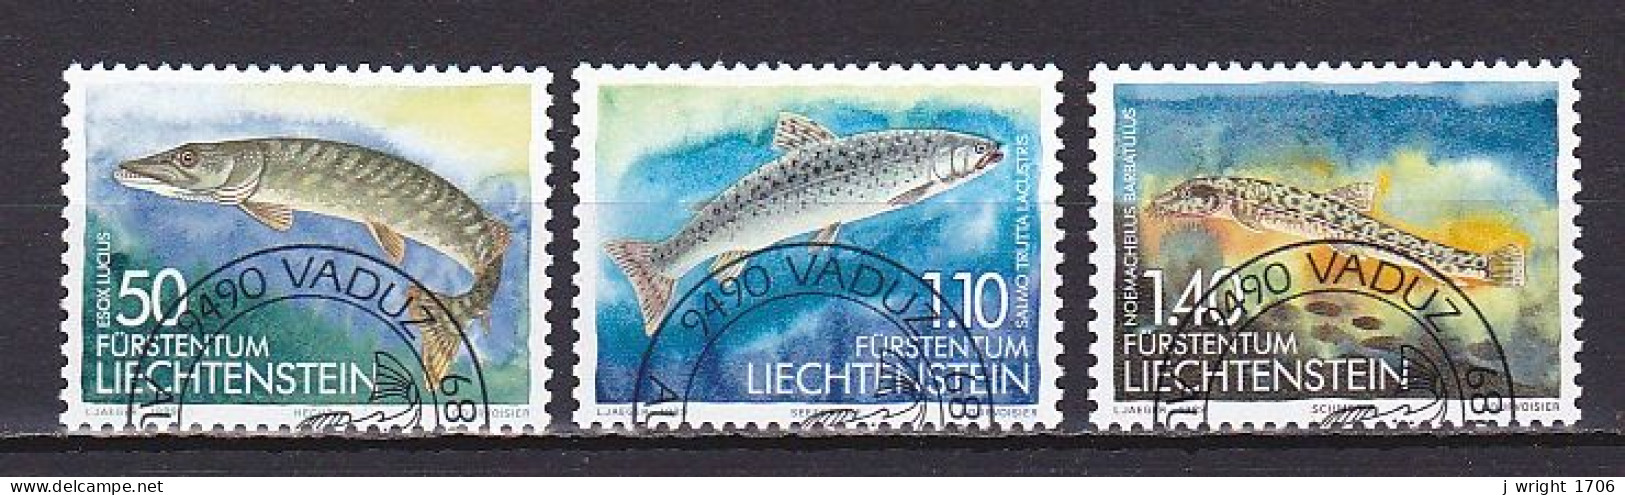 Liechtenstein, 1989, Fish 2nd Series, Set,  CTO - Used Stamps